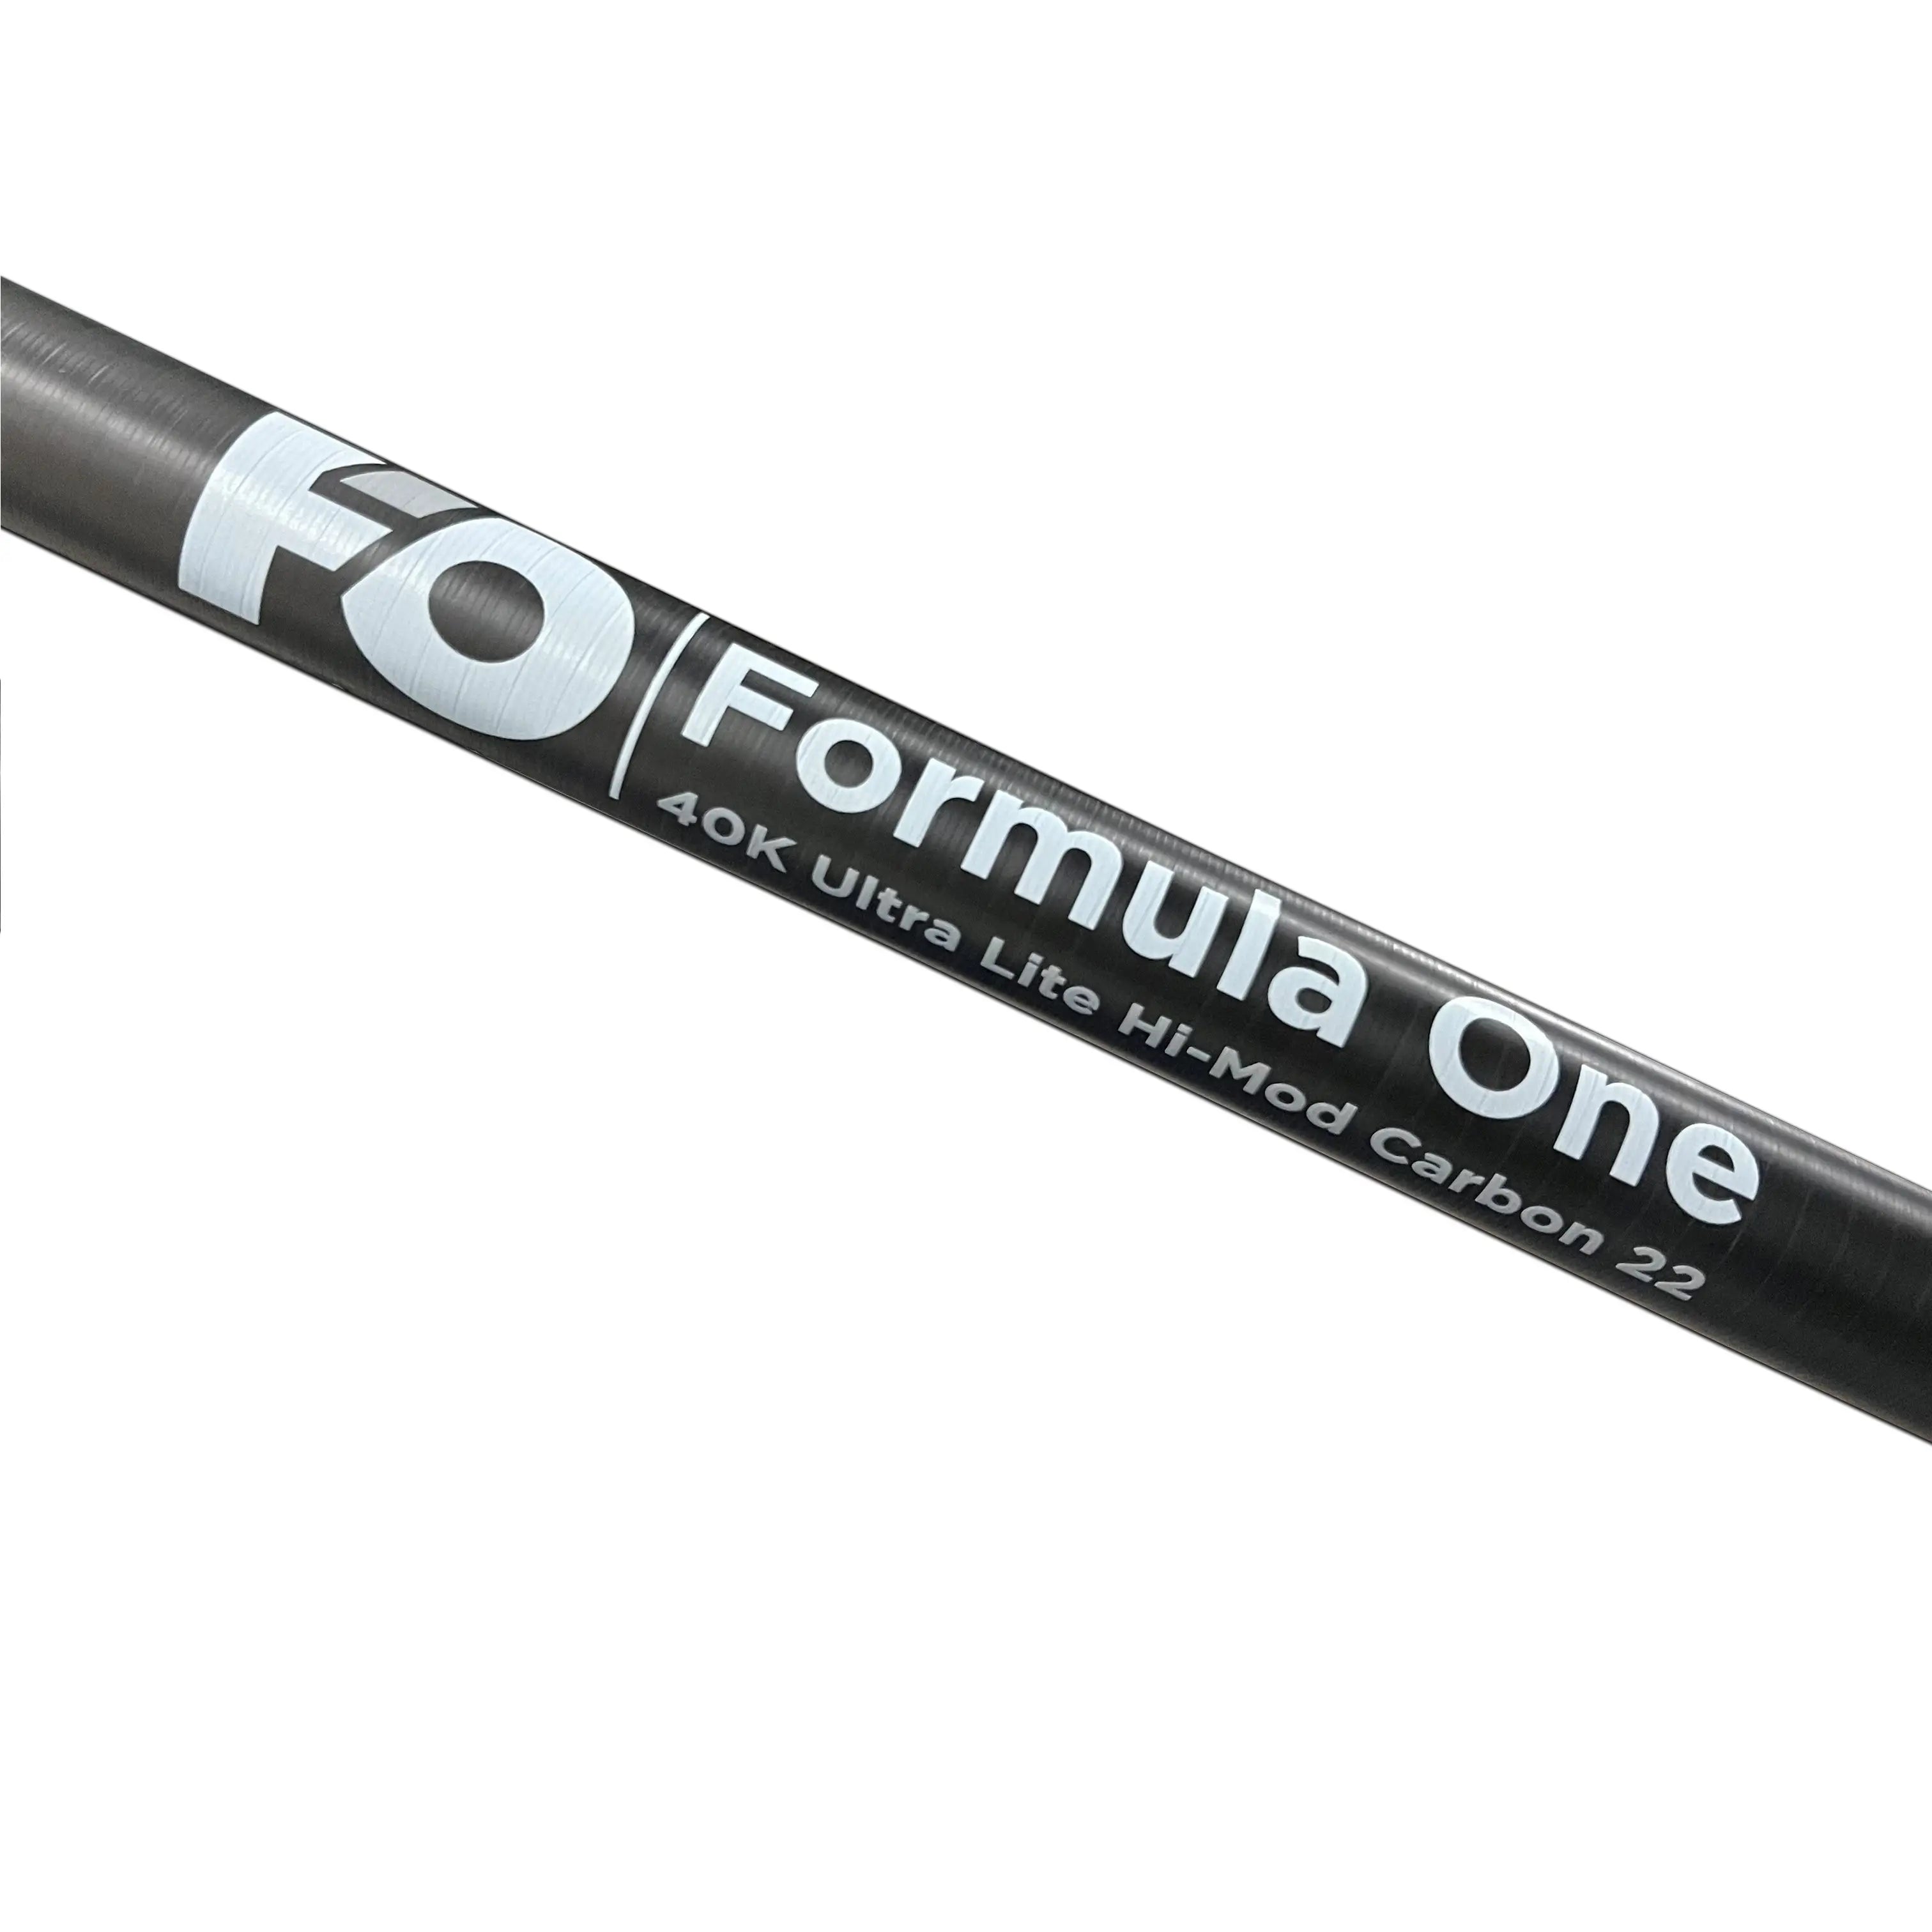 Formula One 40K ultra-lite hi-mod carbon